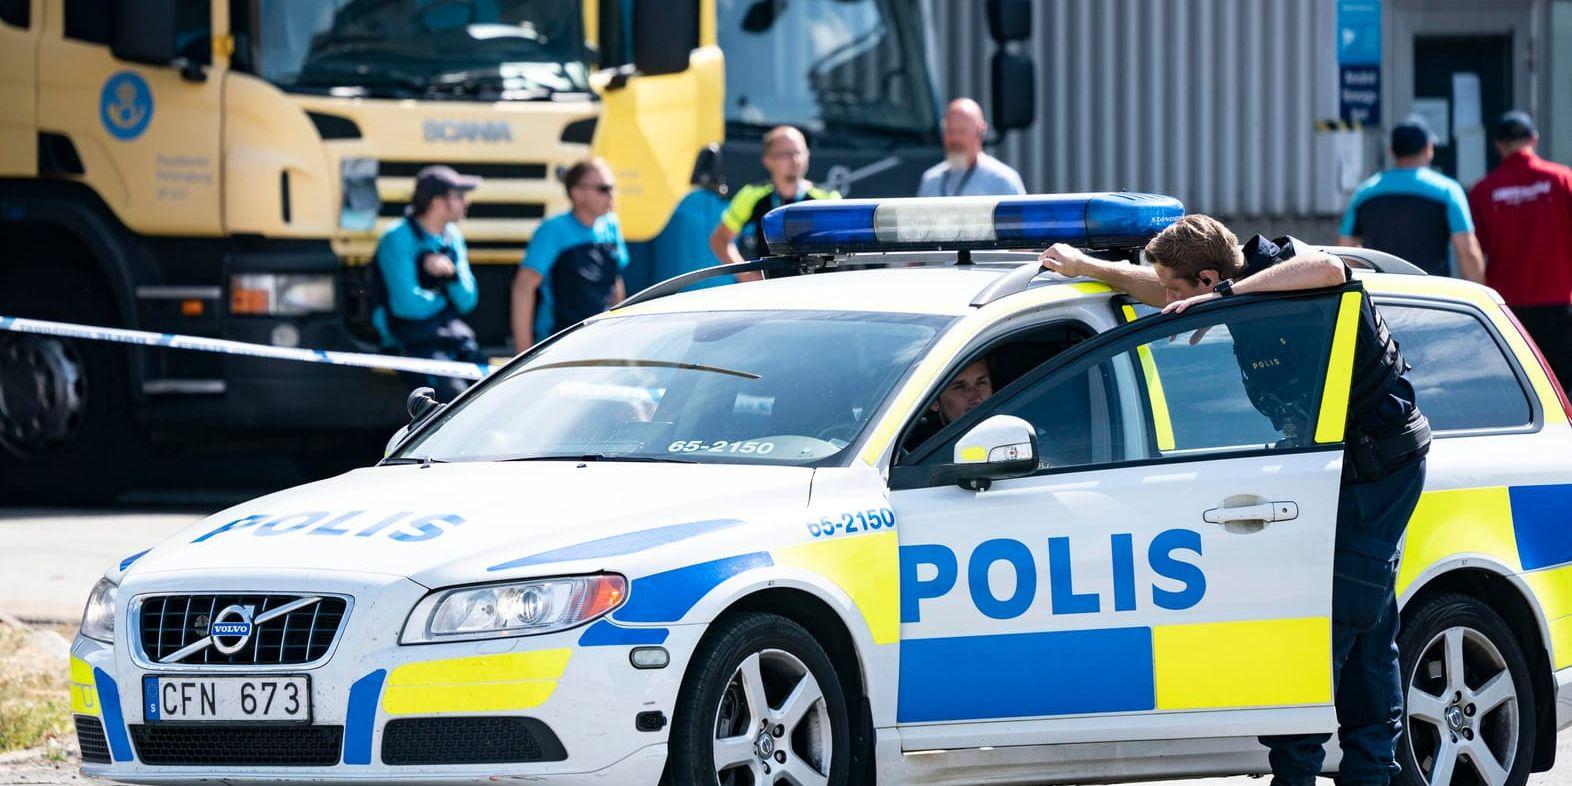 Polis och avspärrningar utanför postterminalen på Borrgatan i Malmö på onsdagen.